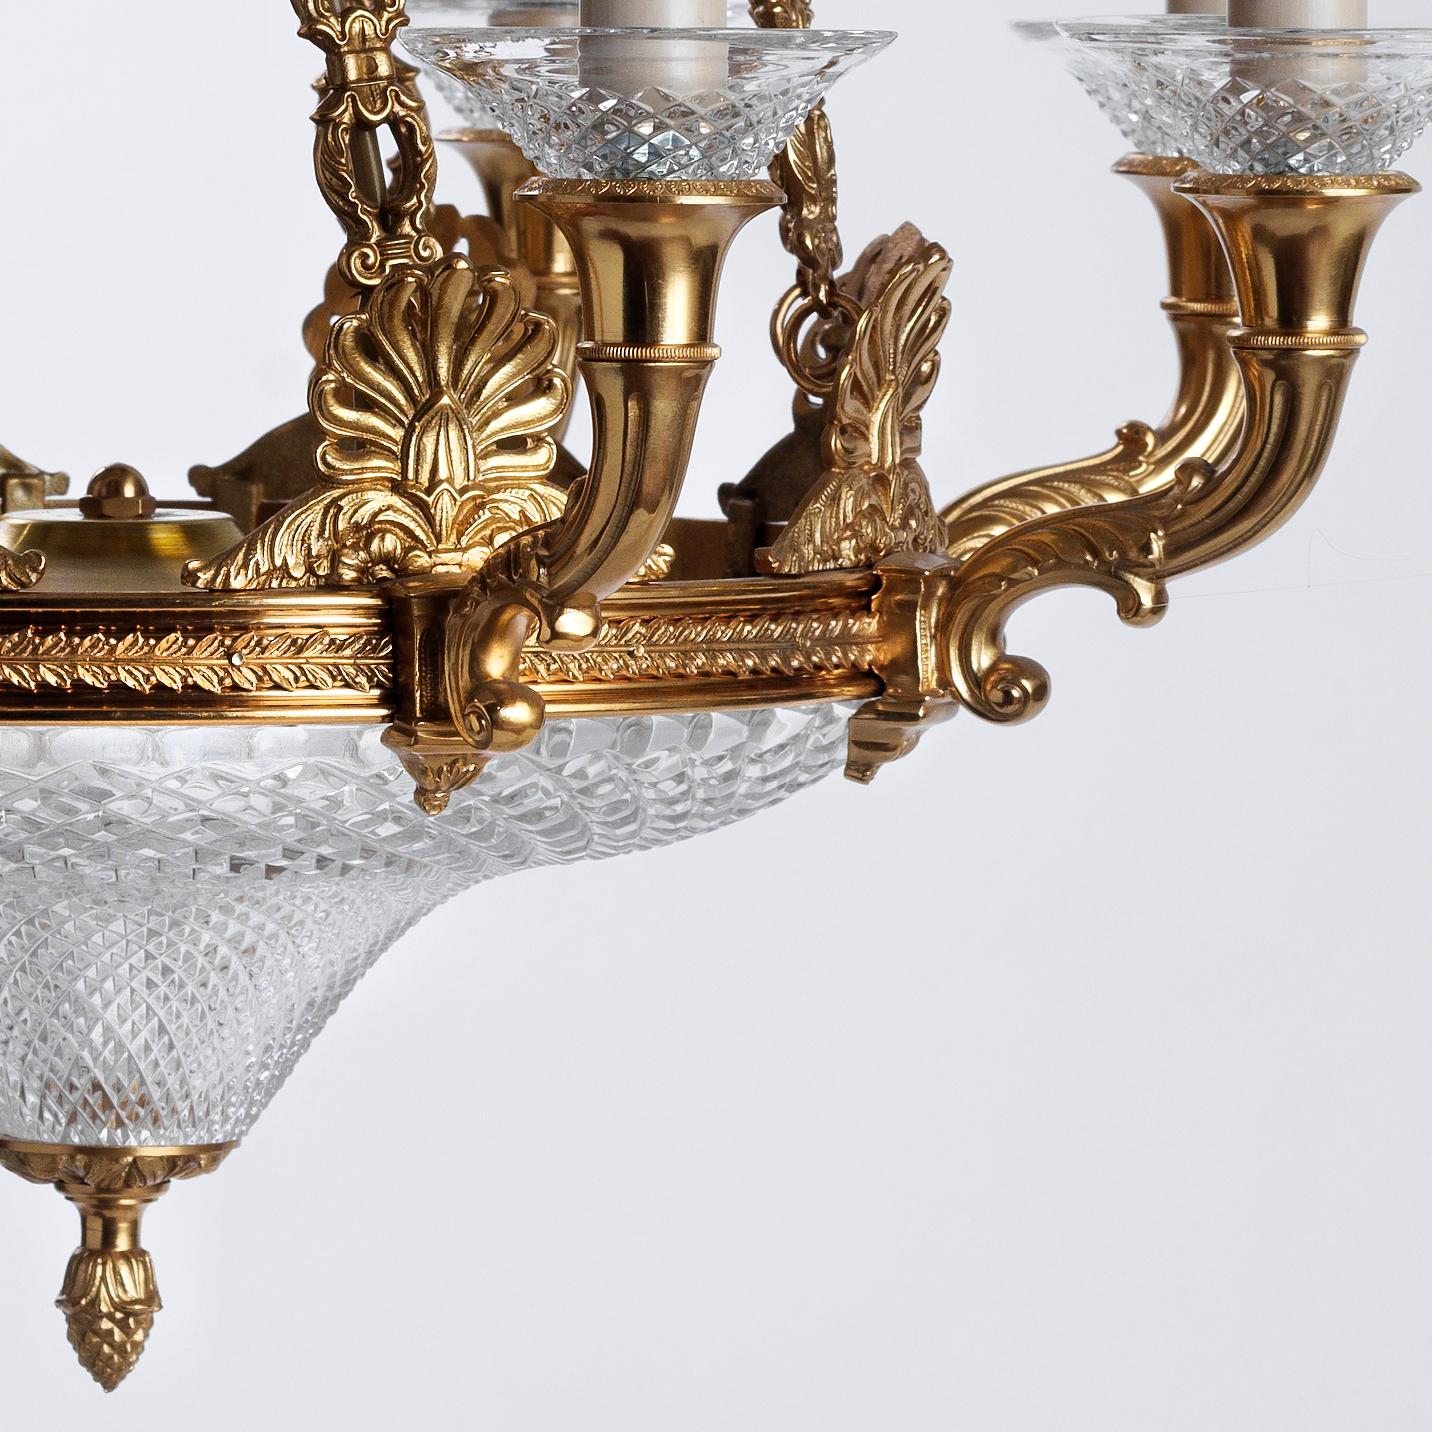 Lustre de style Empire français en bronze doré et cristal taillé par Gherardo Degli Albizzi avec huit lumières.
Ce lustre est caractérisé par une plaque classique agrémentée d'acrotères et de bras de cornucopias en bronze doré. En haut, il y a une